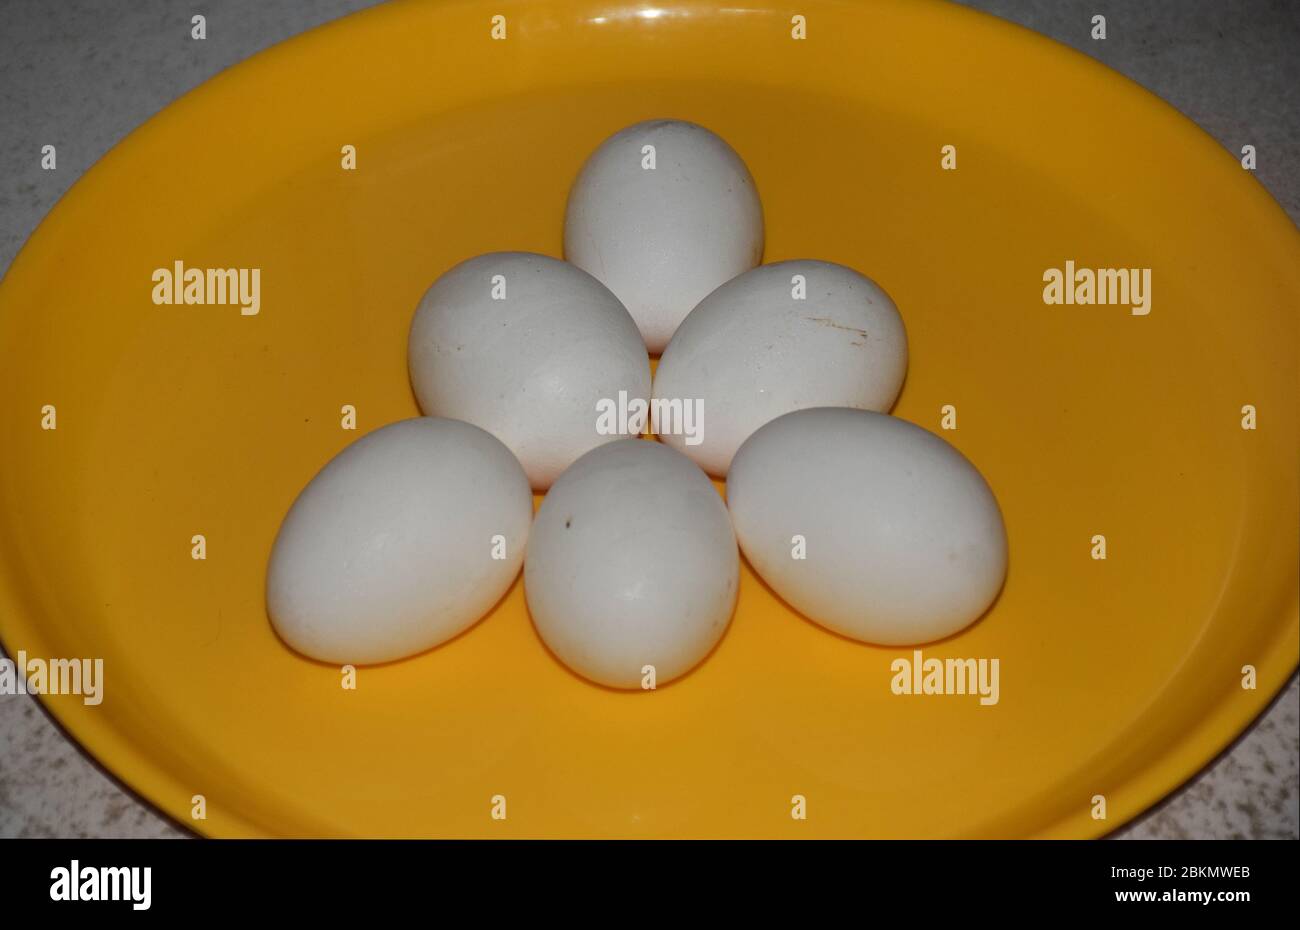 Gros plan d'une demi-douzaine d'œufs de volaille blanche de Hen Banque D'Images